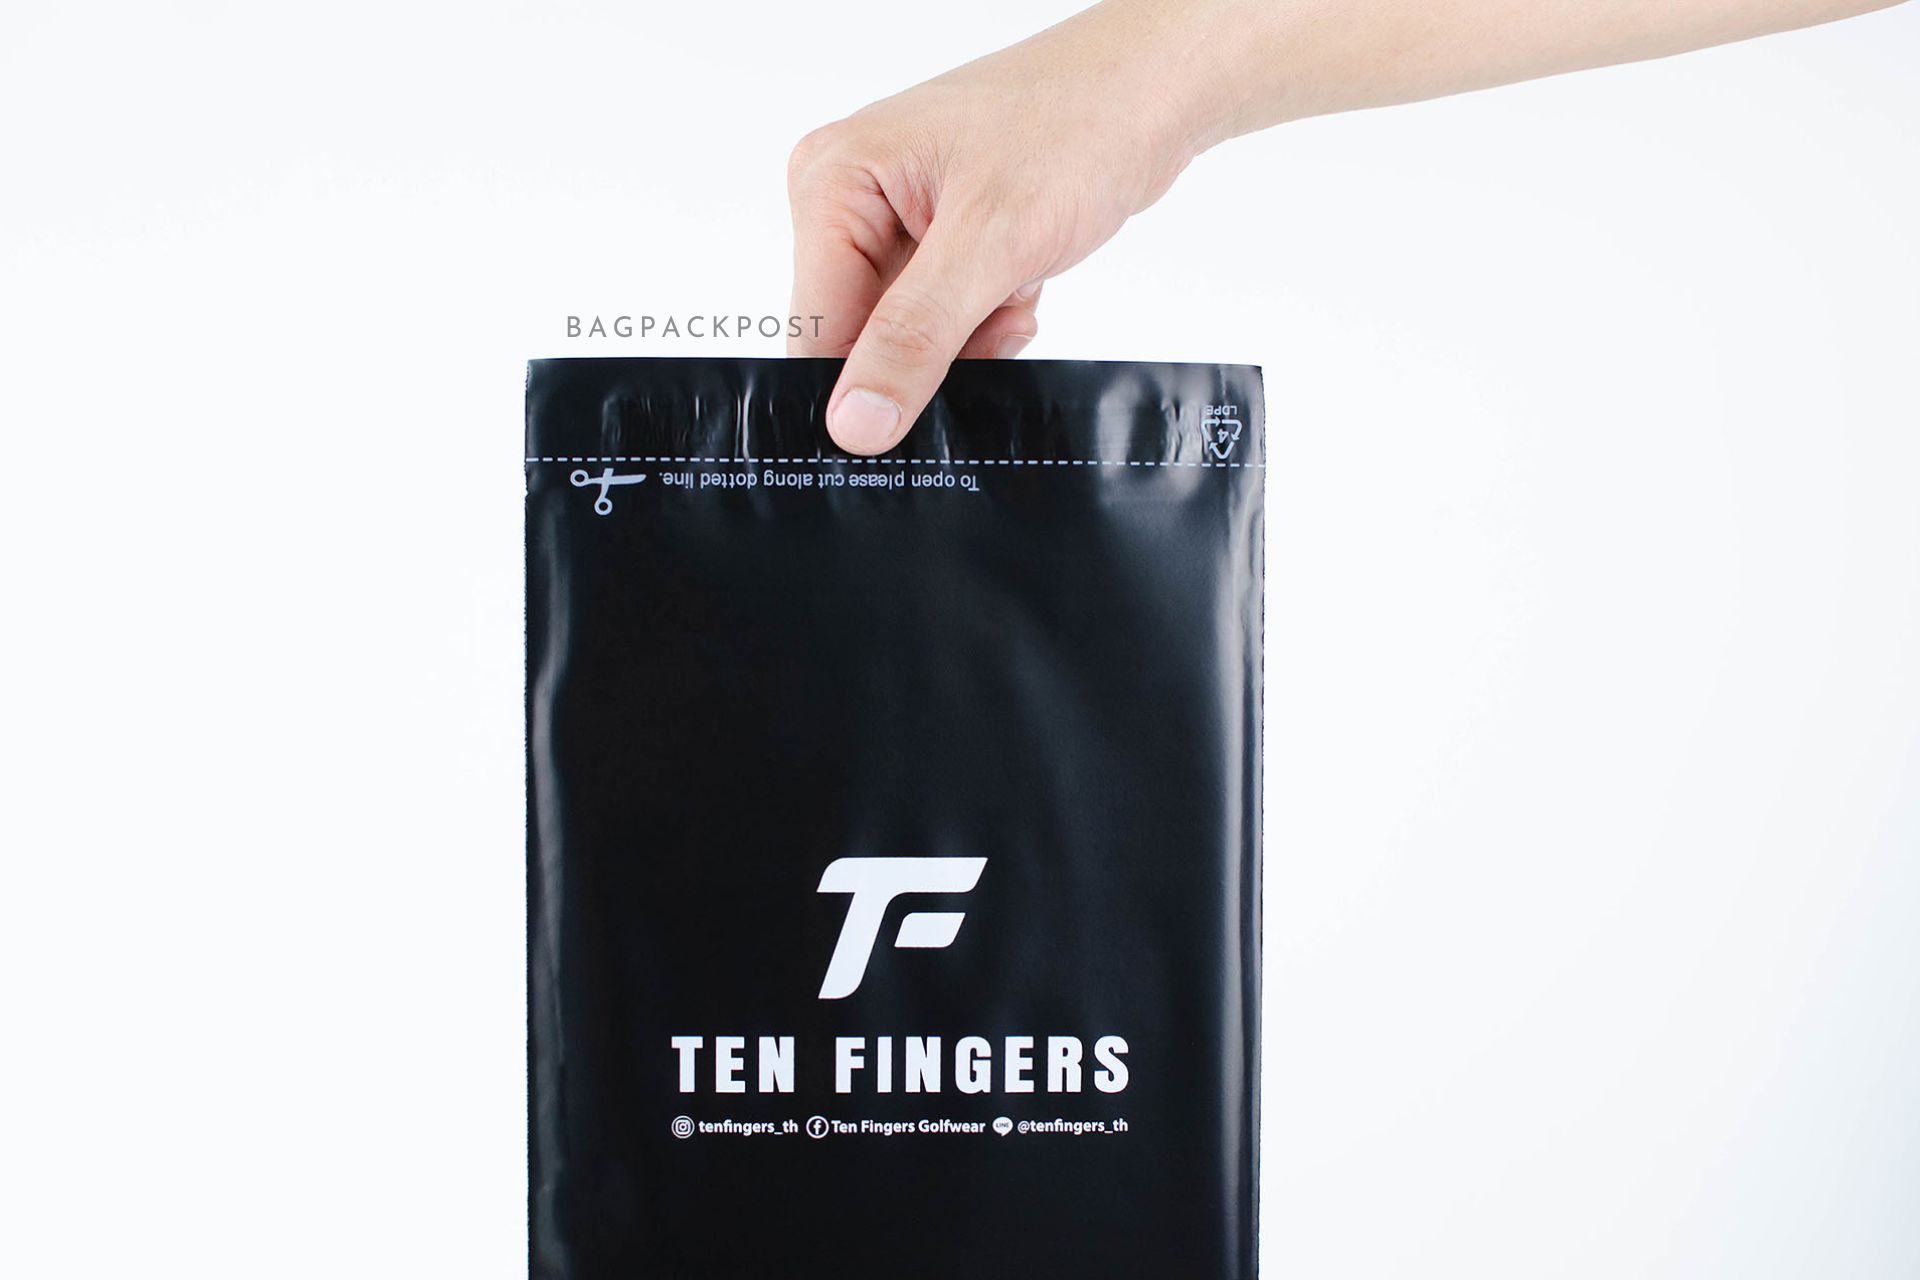 ผลิตถุงไปรษณีย์ ถุงพัสดุ ซองไปรษณีย์พิมพ์ลาย Ten Fingers ซองไปรษณีย์สีดำ ถุงไปรษณีย์พิมพ์ลาย 5 BagPackPost